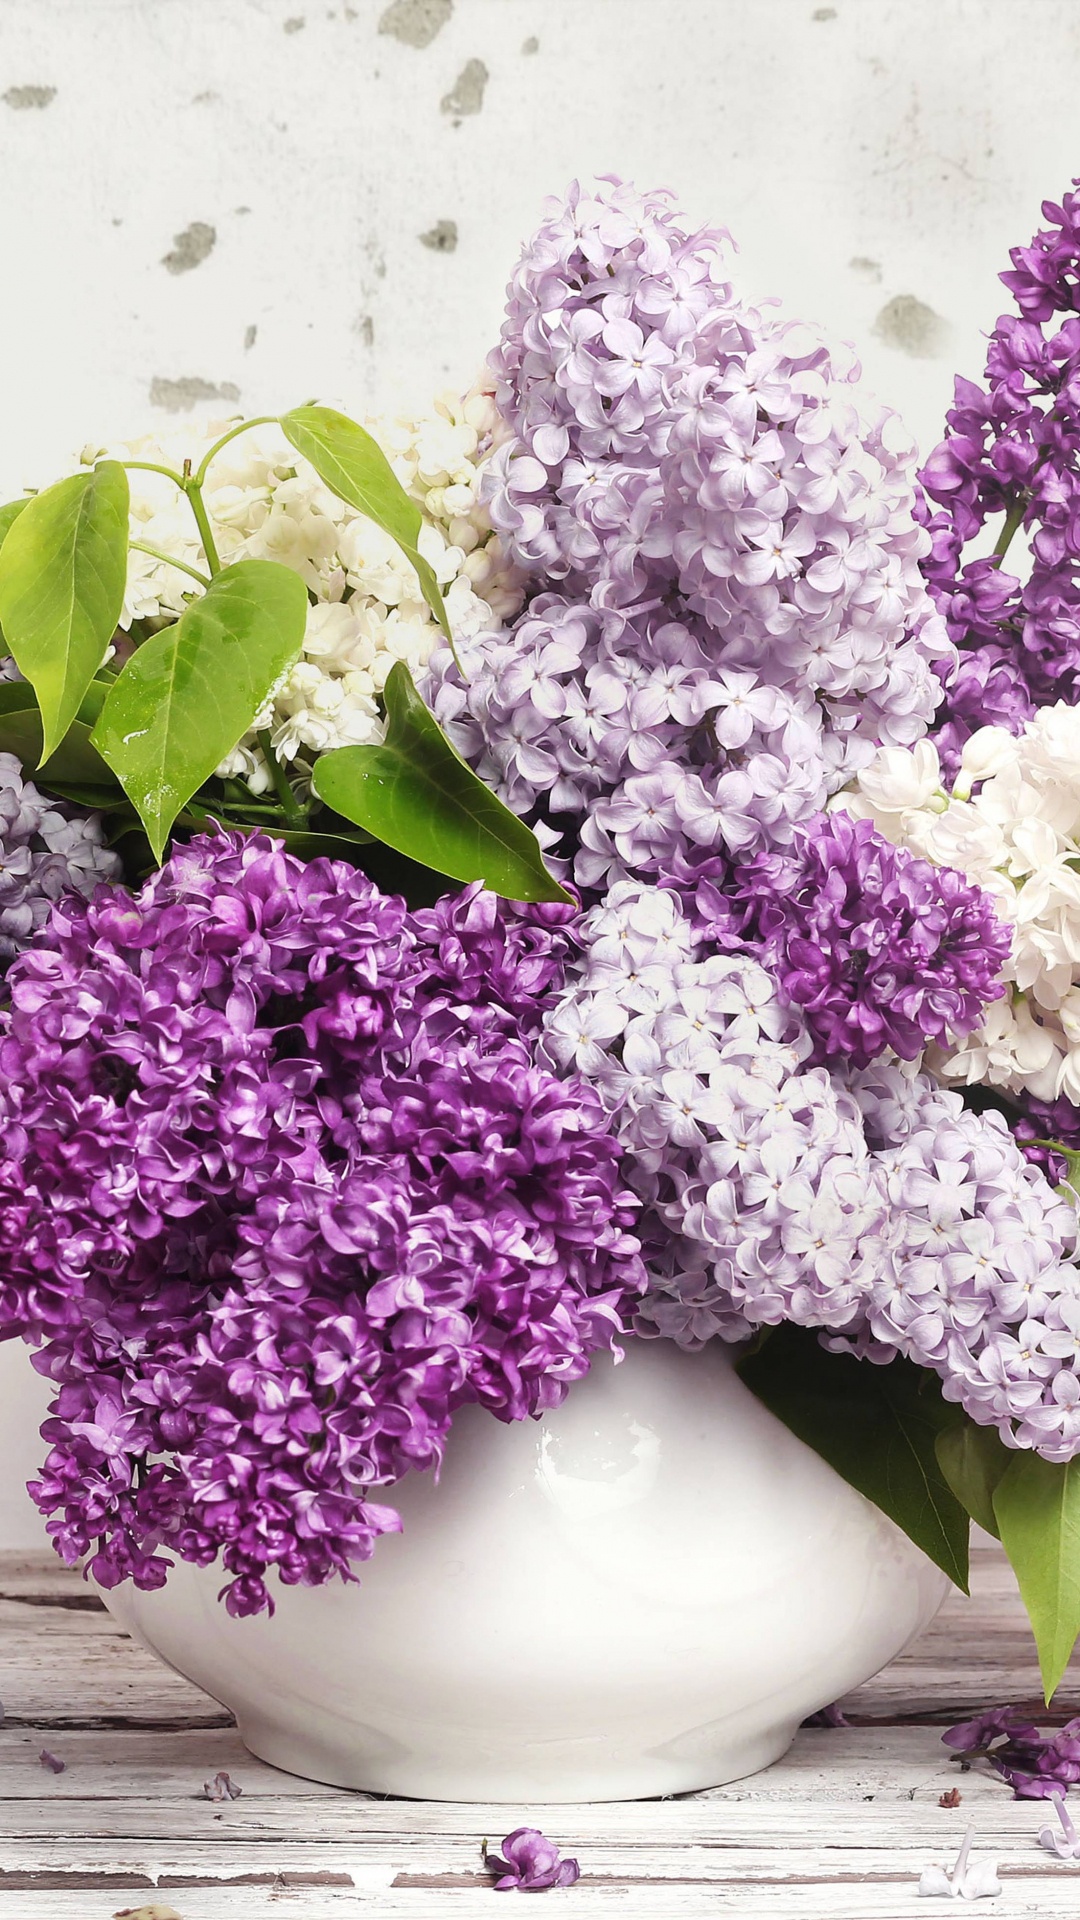 Fleurs Violettes et Blanches Dans un Vase en Céramique Blanche. Wallpaper in 1080x1920 Resolution